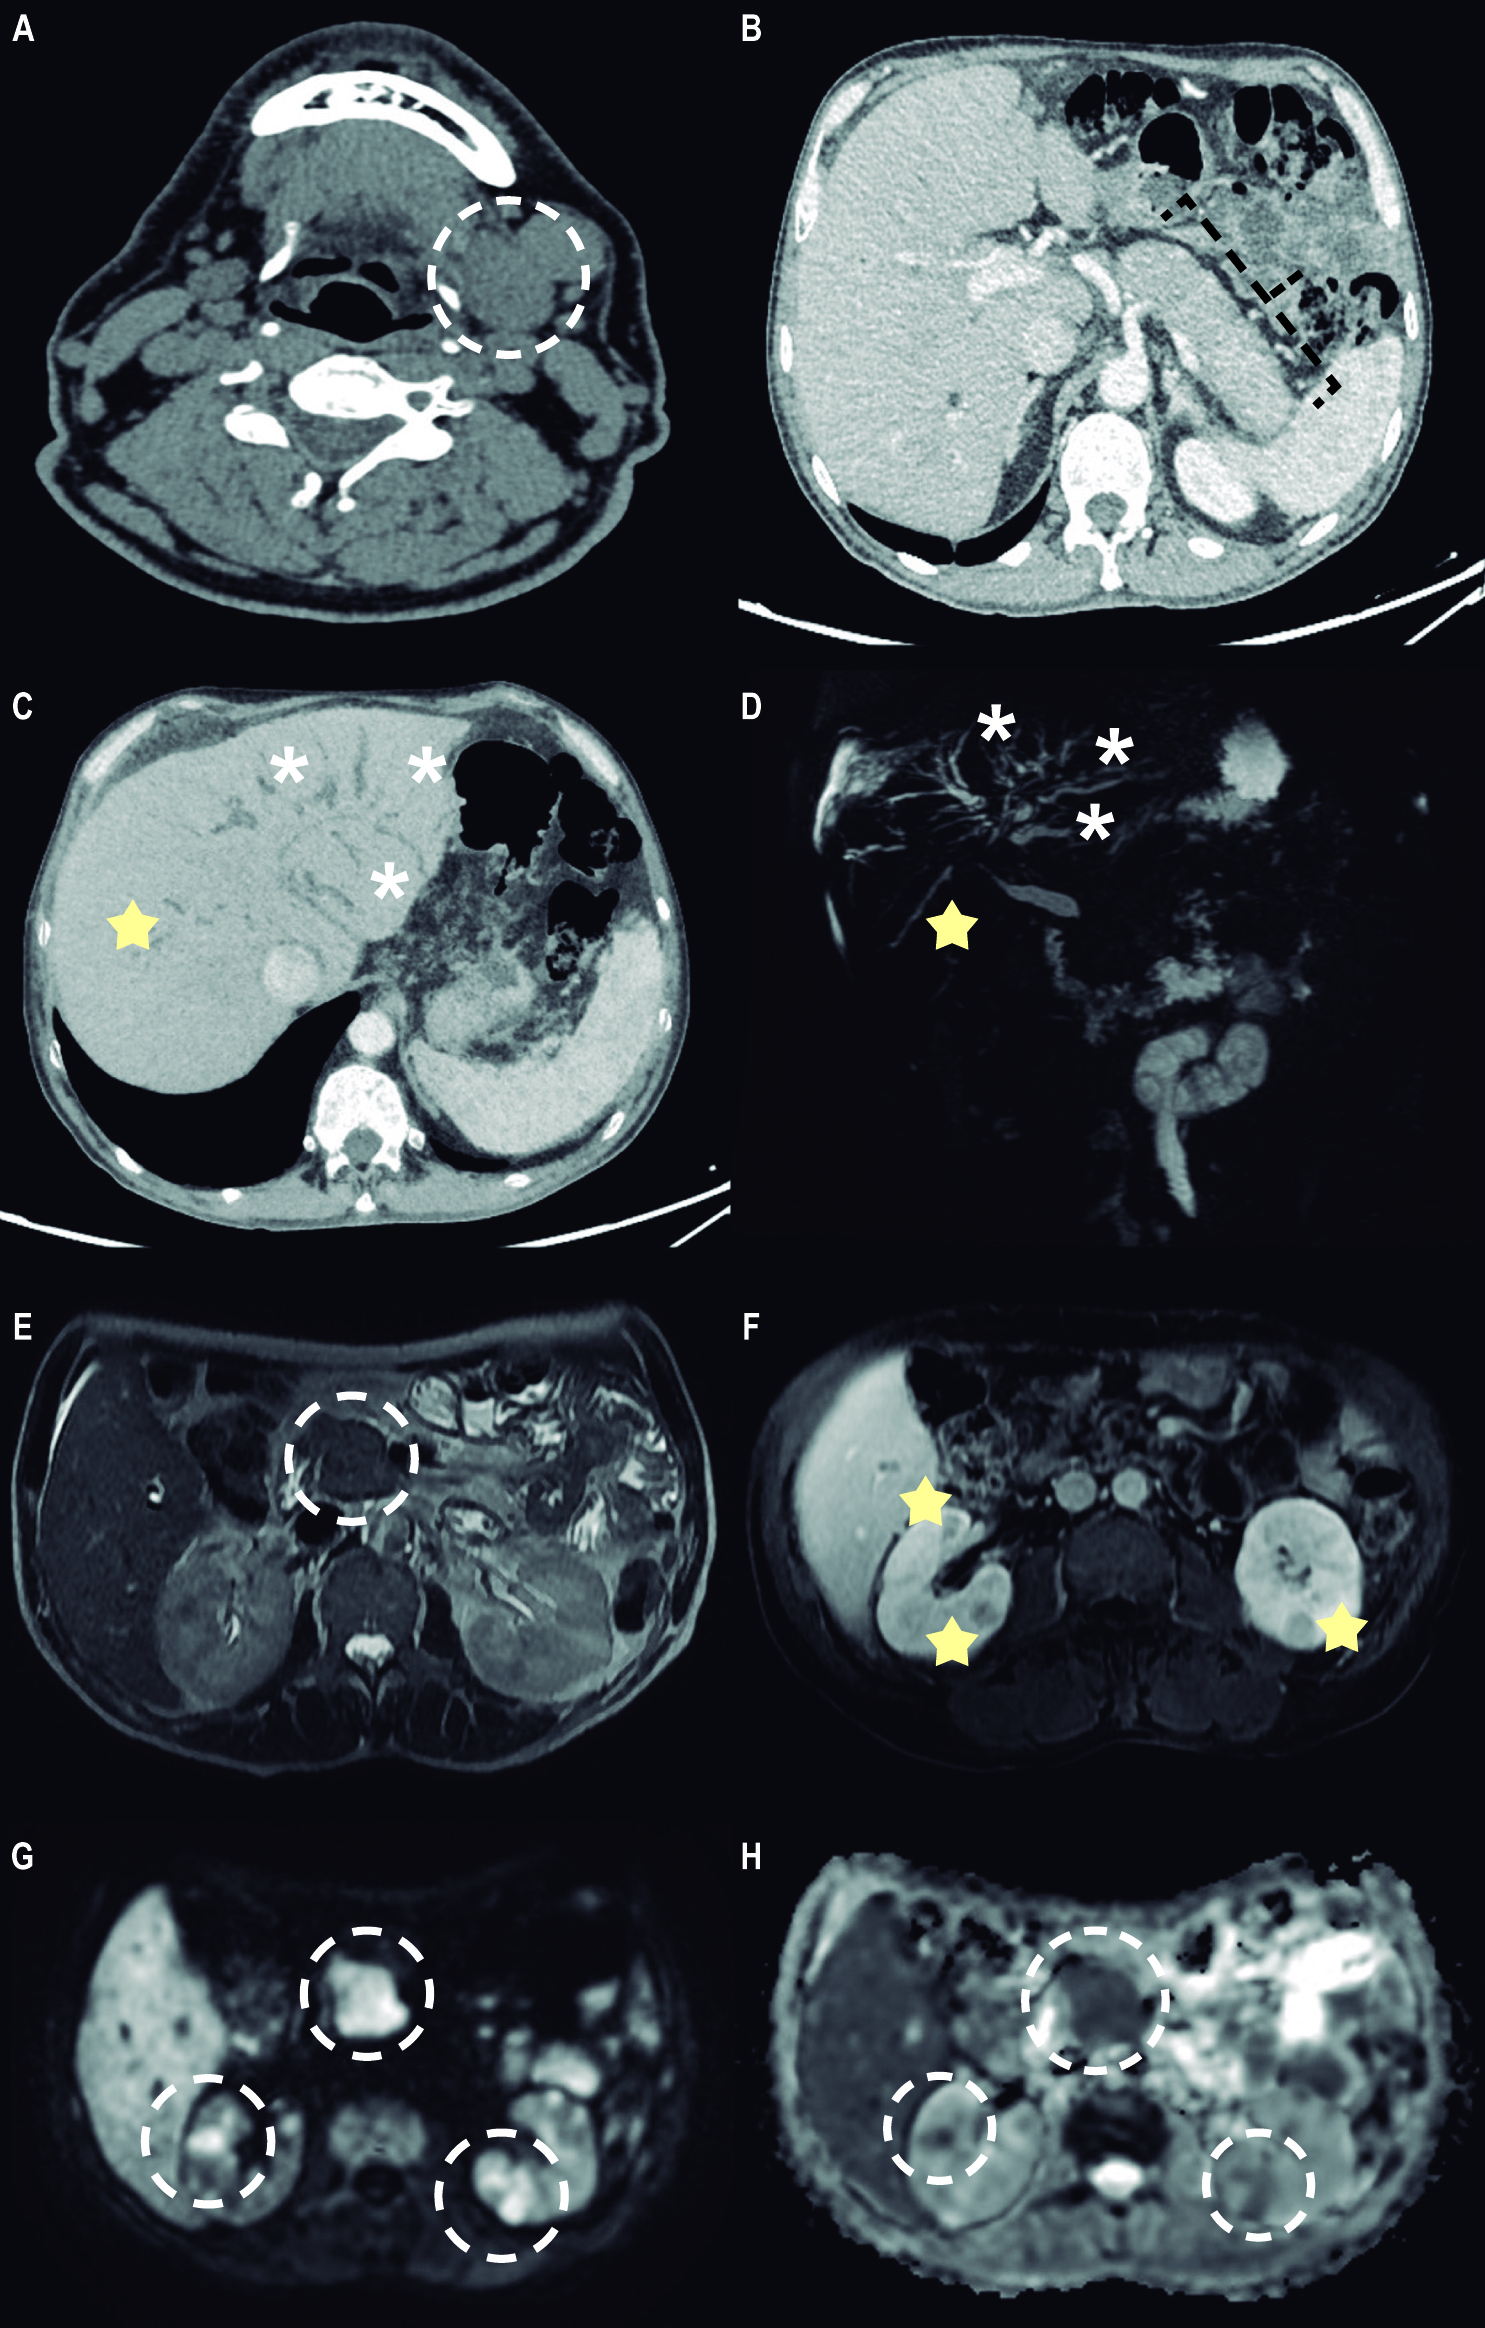 Figura 1. A. La tomografía axial computarizada (TAC) sin contraste 2 años antes de la admisión muestra un aumento de volumen de la glándula submandibular izquierda, asociado con algunas adenopatías adyacentes. B. La TAC con contraste muestra un halo hipoatenuante característico alrededor del cuerpo y la cola del páncreas, un hallazgo sugestivo de pancreatitis autoinmune difusa. C y D. La reconstrucción MinIP y la colangiorresonancia muestran una dilatación de la vía biliar intrahepática (asterisco), así como áreas de estenosis segmentarias (estrella). E. Imagen de resonancia magnética axial ponderada en T2 que muestra un agrandamiento focal bien delimitado a nivel de la cabeza, que se correlaciona con restricción en la difusión (G). F, G y H. Imagen de resonancia magnética axial ponderada en T1 con contraste que muestra múltiples lesiones nodulares renales bien definidas, las cuales muestran realce a la administración de contraste y se correlacionan con restricción a la difusión (G y H). Fuente: expediente médico del paciente